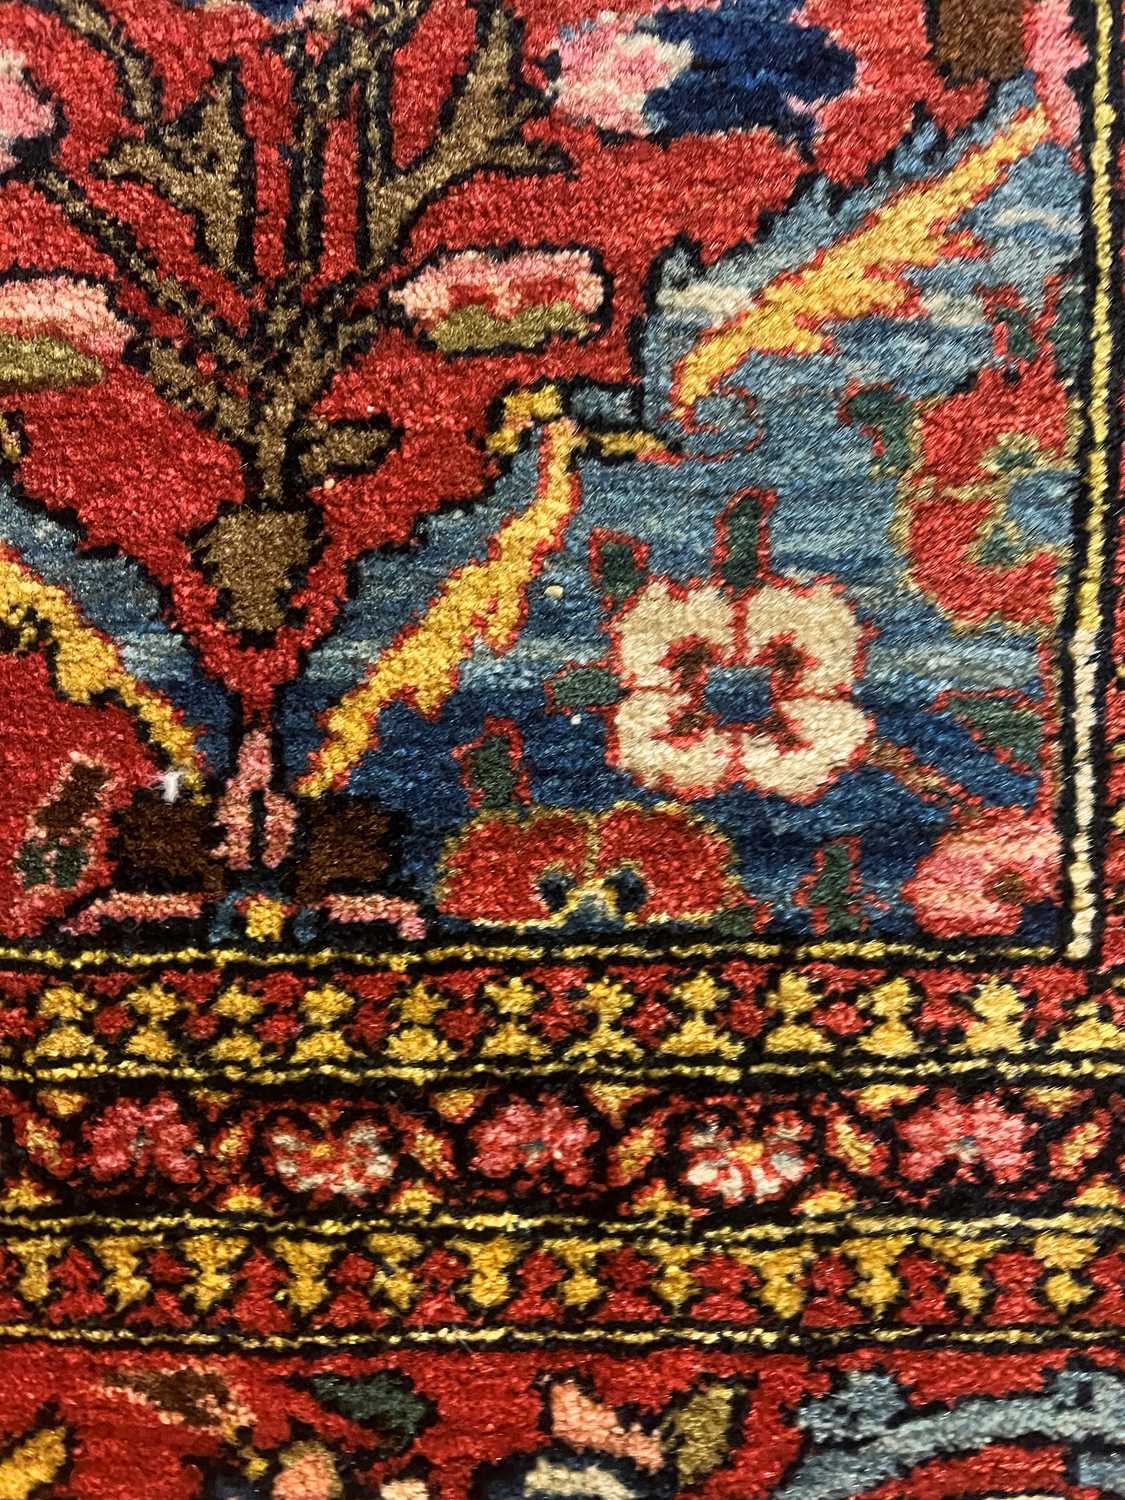 A Kashan wool rug - Image 32 of 59